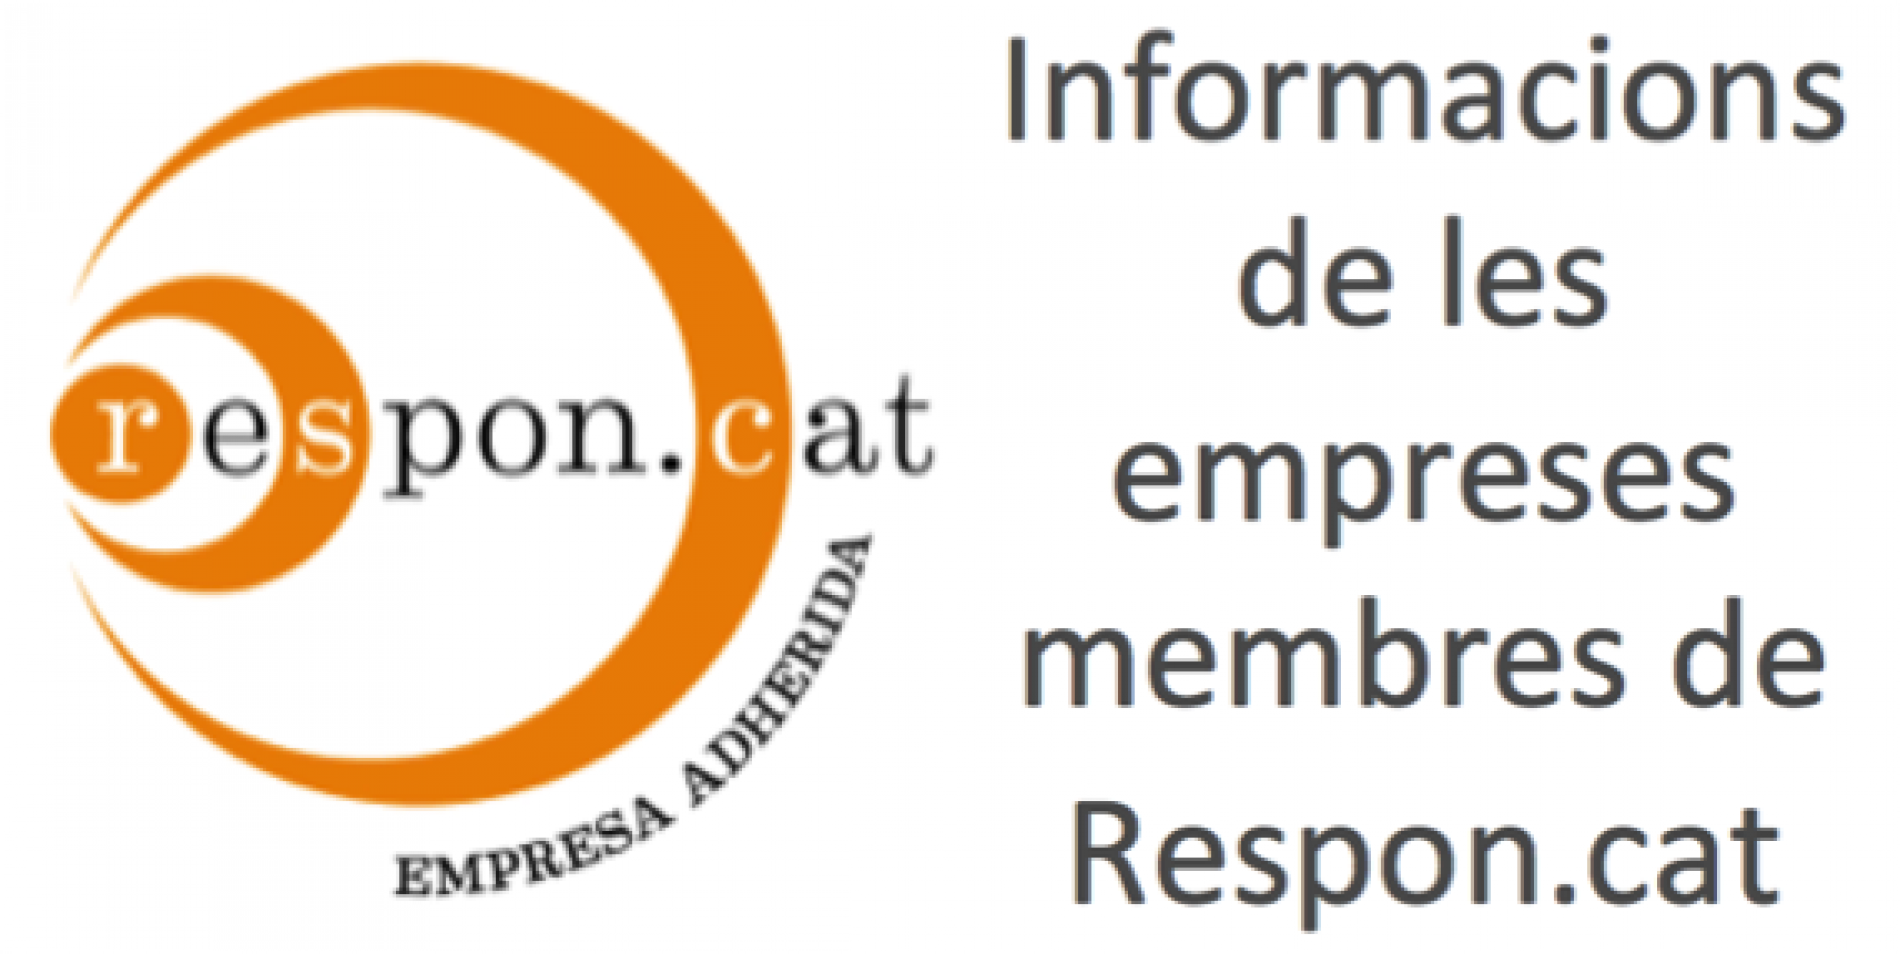 Cafès Novell, empresa membre de Respon.cat,  promou l’emprenedoria i la inclusió social